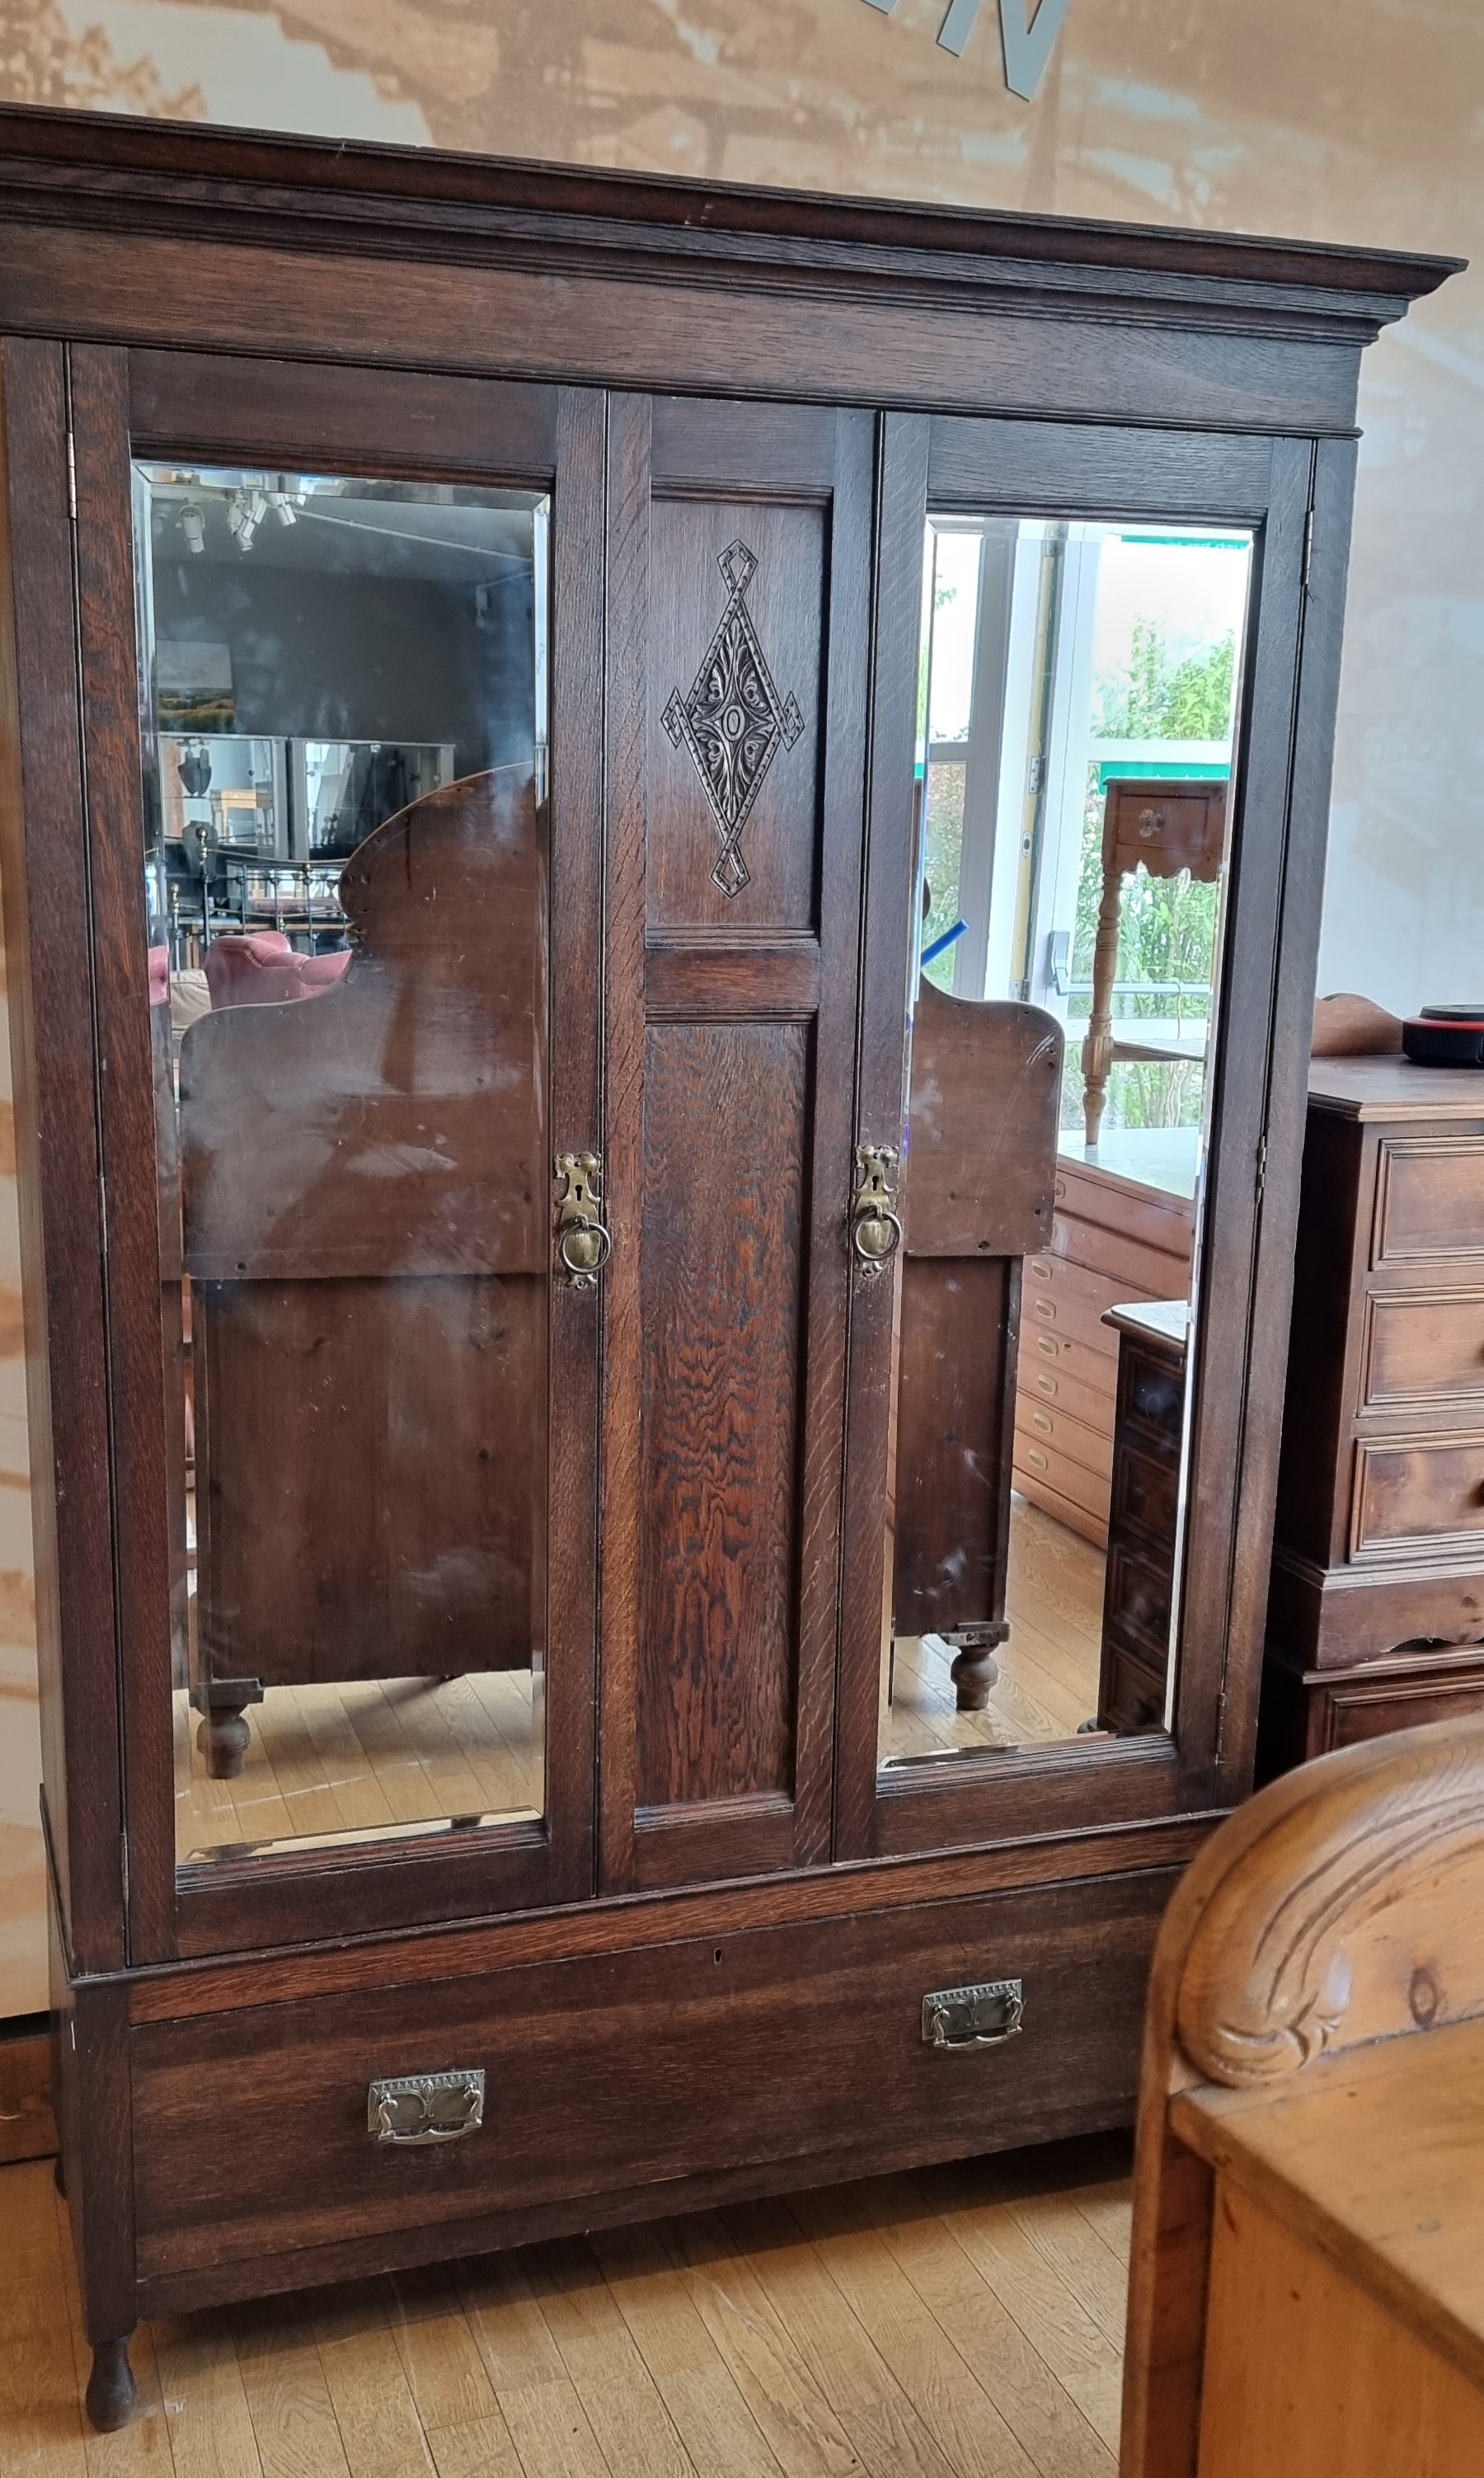 An Edwardian oak two mirror door wardrobe by Bernard H. Rose, Woodseats, cabinet makers, single